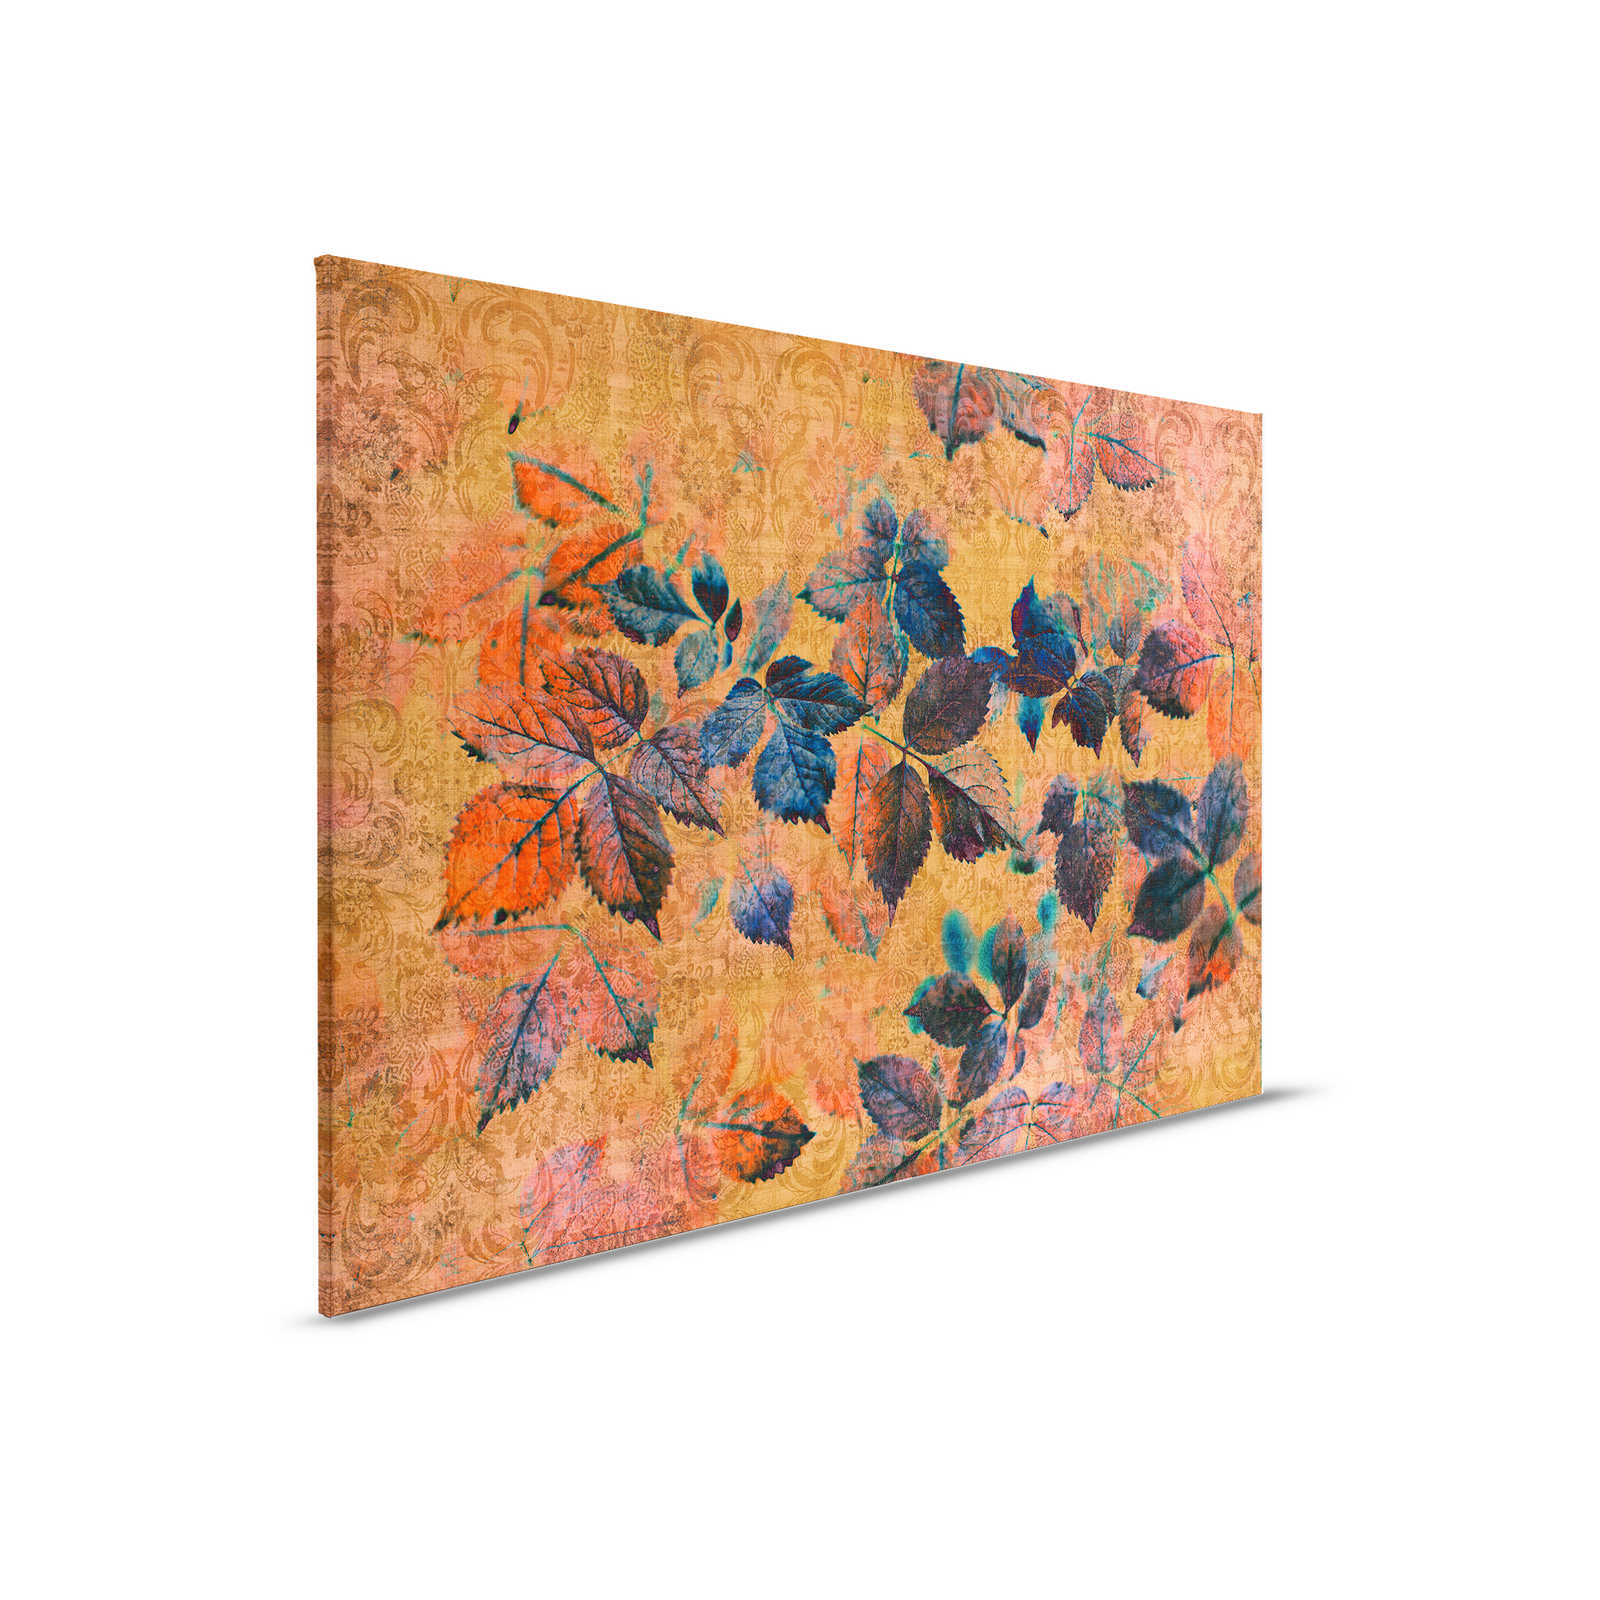 Nazomer 2 - Bloemrijk canvas schilderij in natuurlijke linnenstructuur met warme sfeer - 0,90 m x 0,60 m
